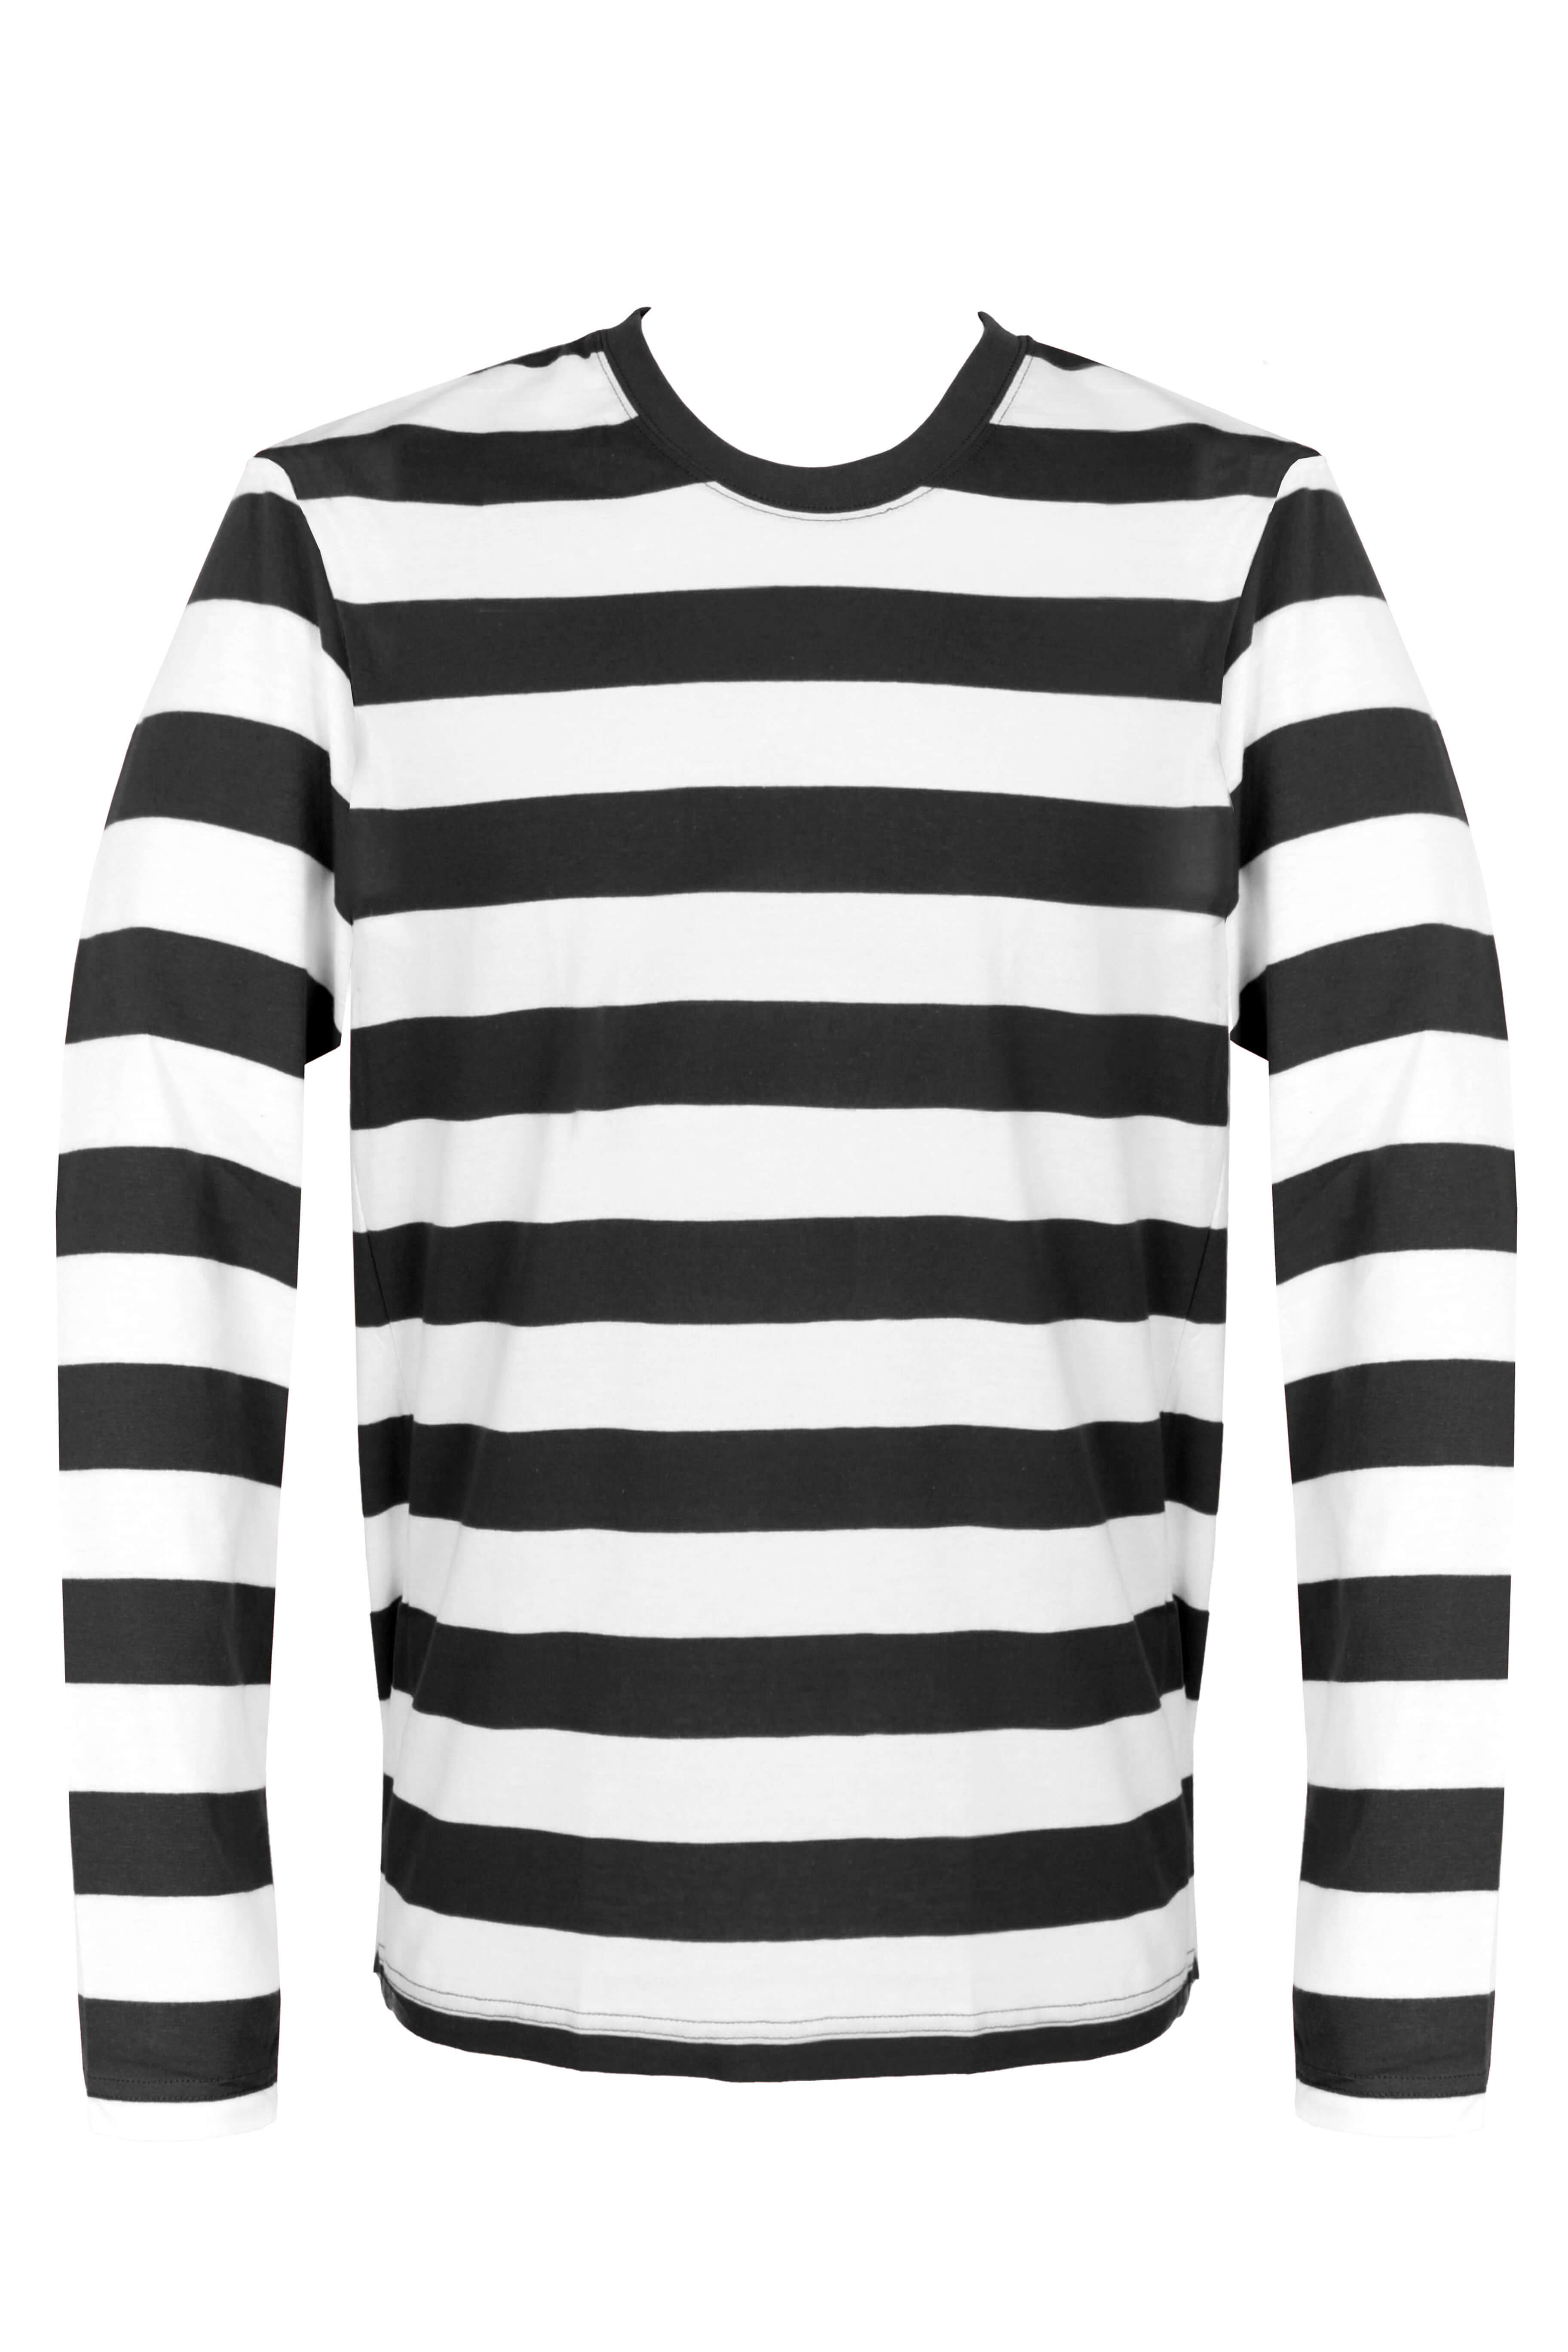 black and white stripe top